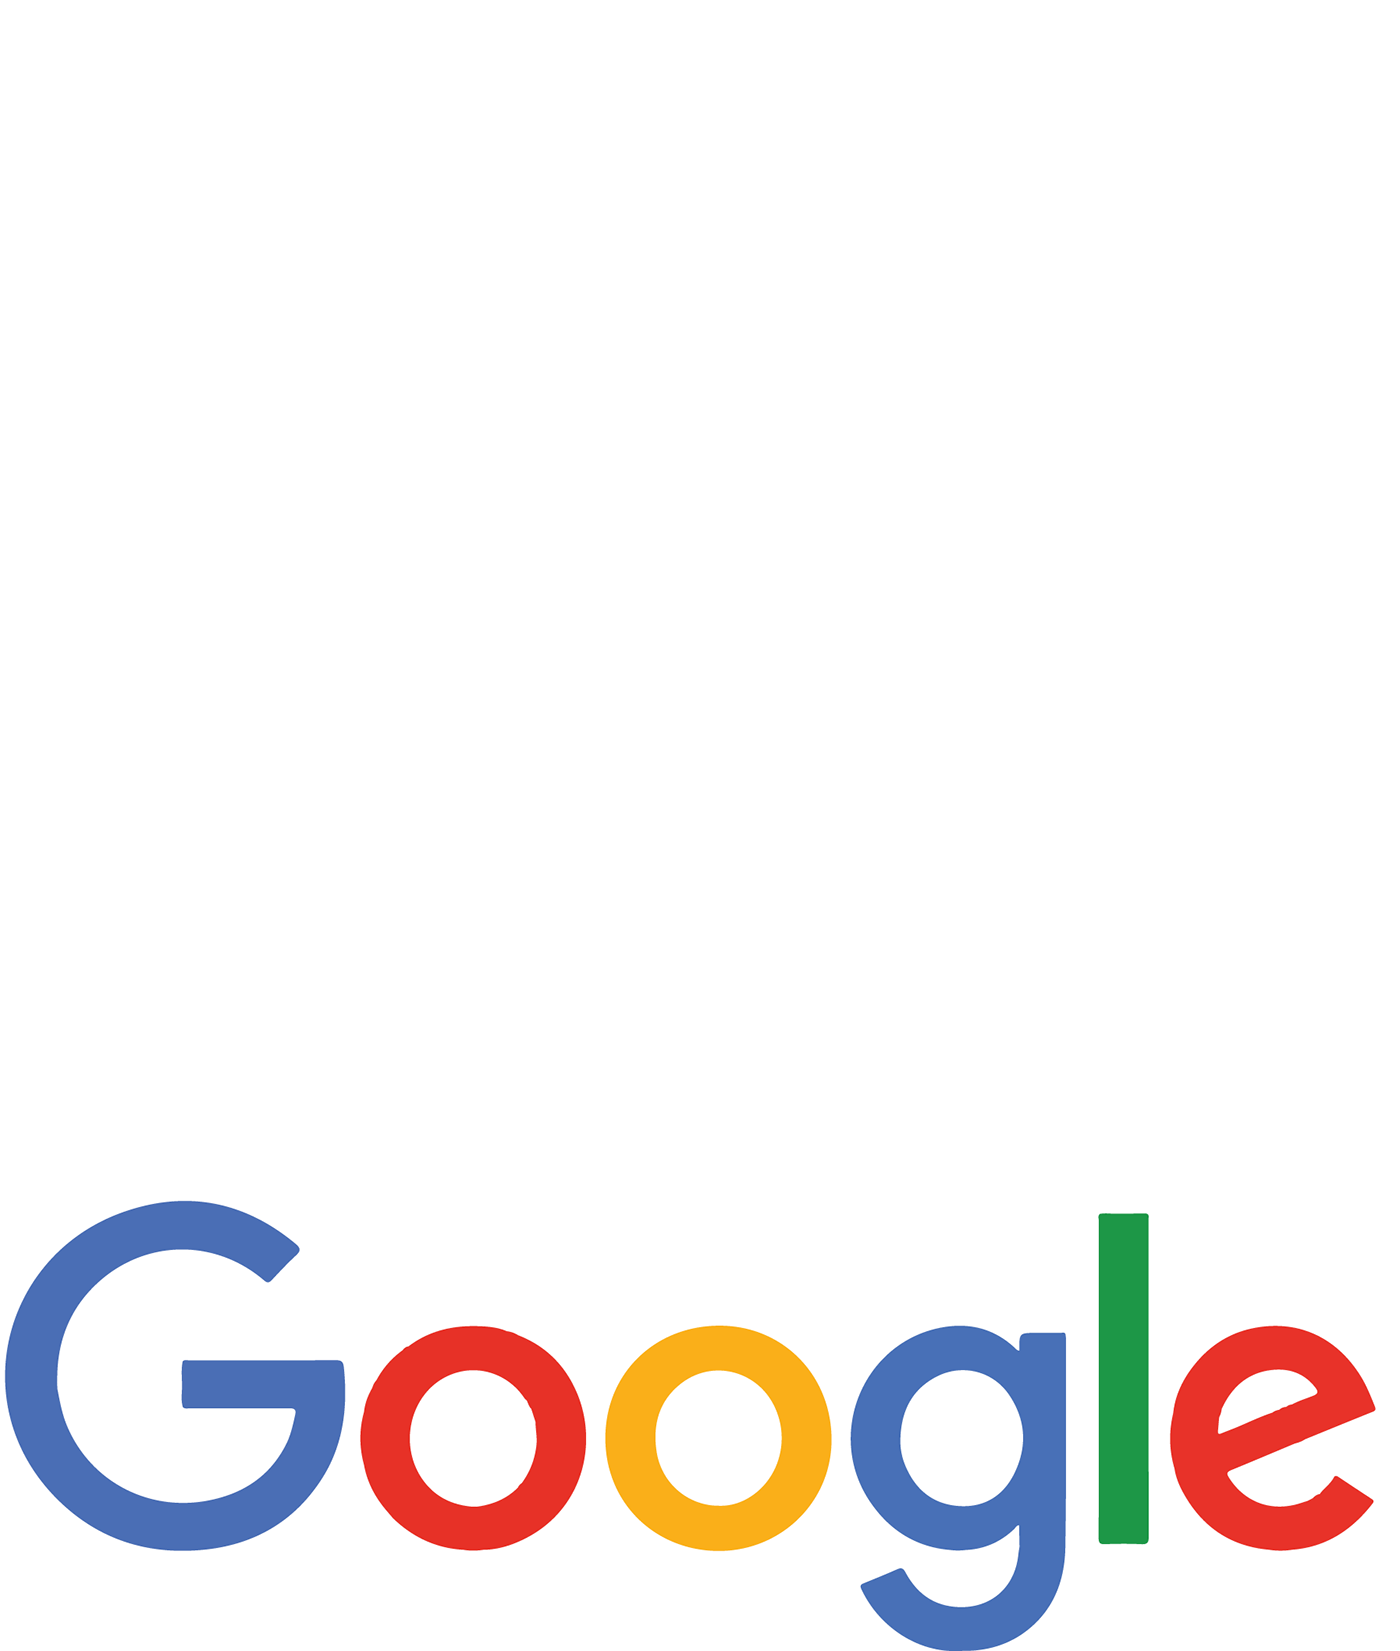 Гугл. Первый гугл. Гугл лого. Эволюция лого гугл. Google first